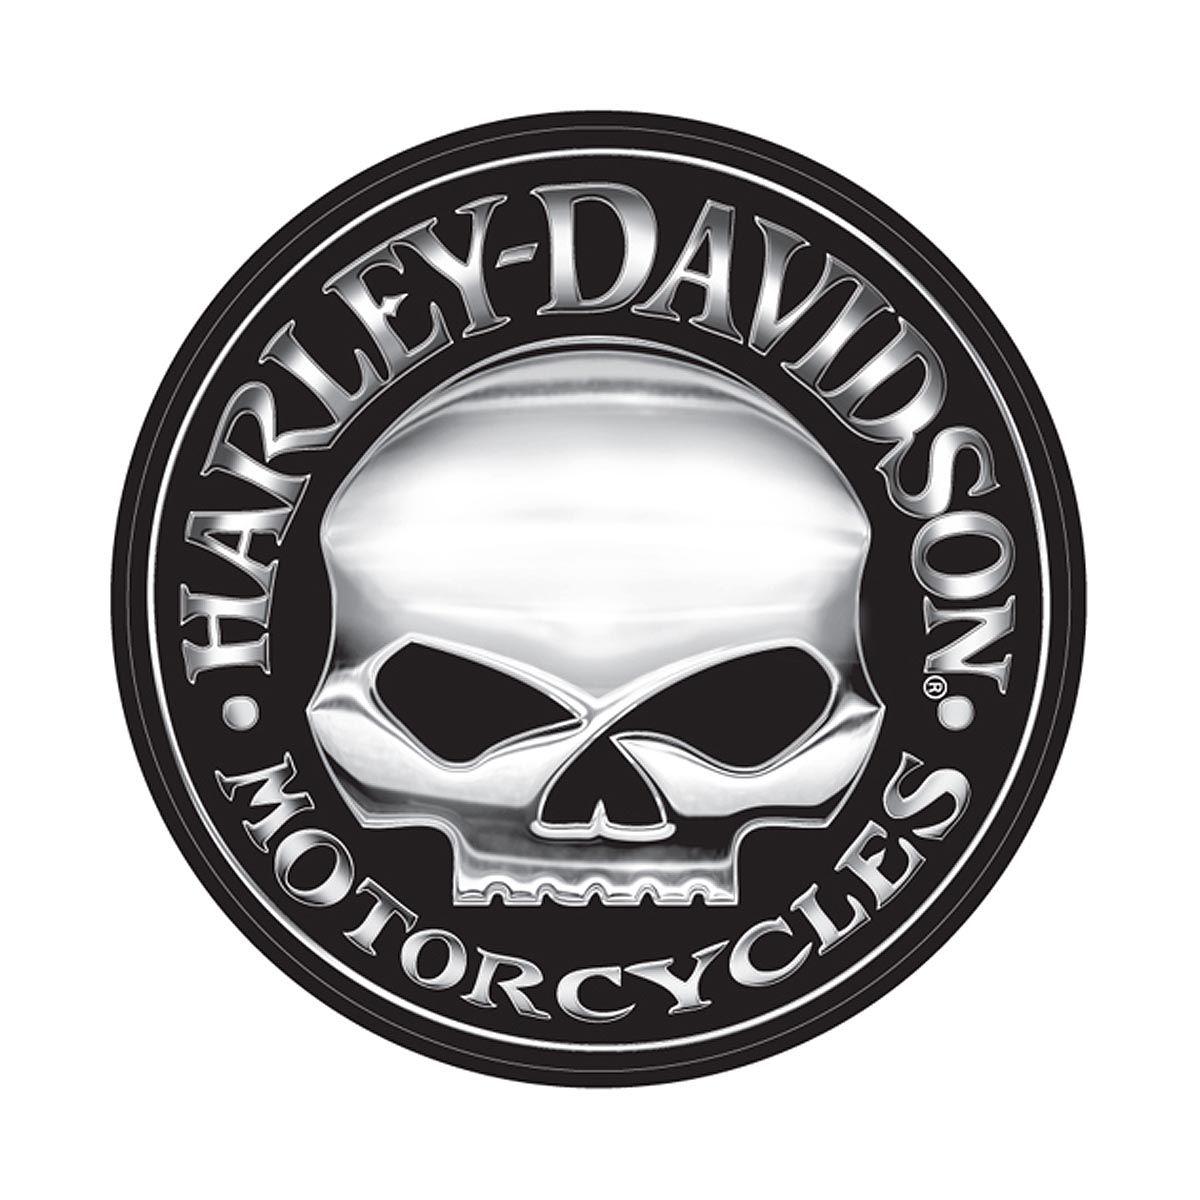 Harley-Davidson Skull Logo - Willie G. for Harley Davidson Skull Logo | Hot Harley Davidson ...